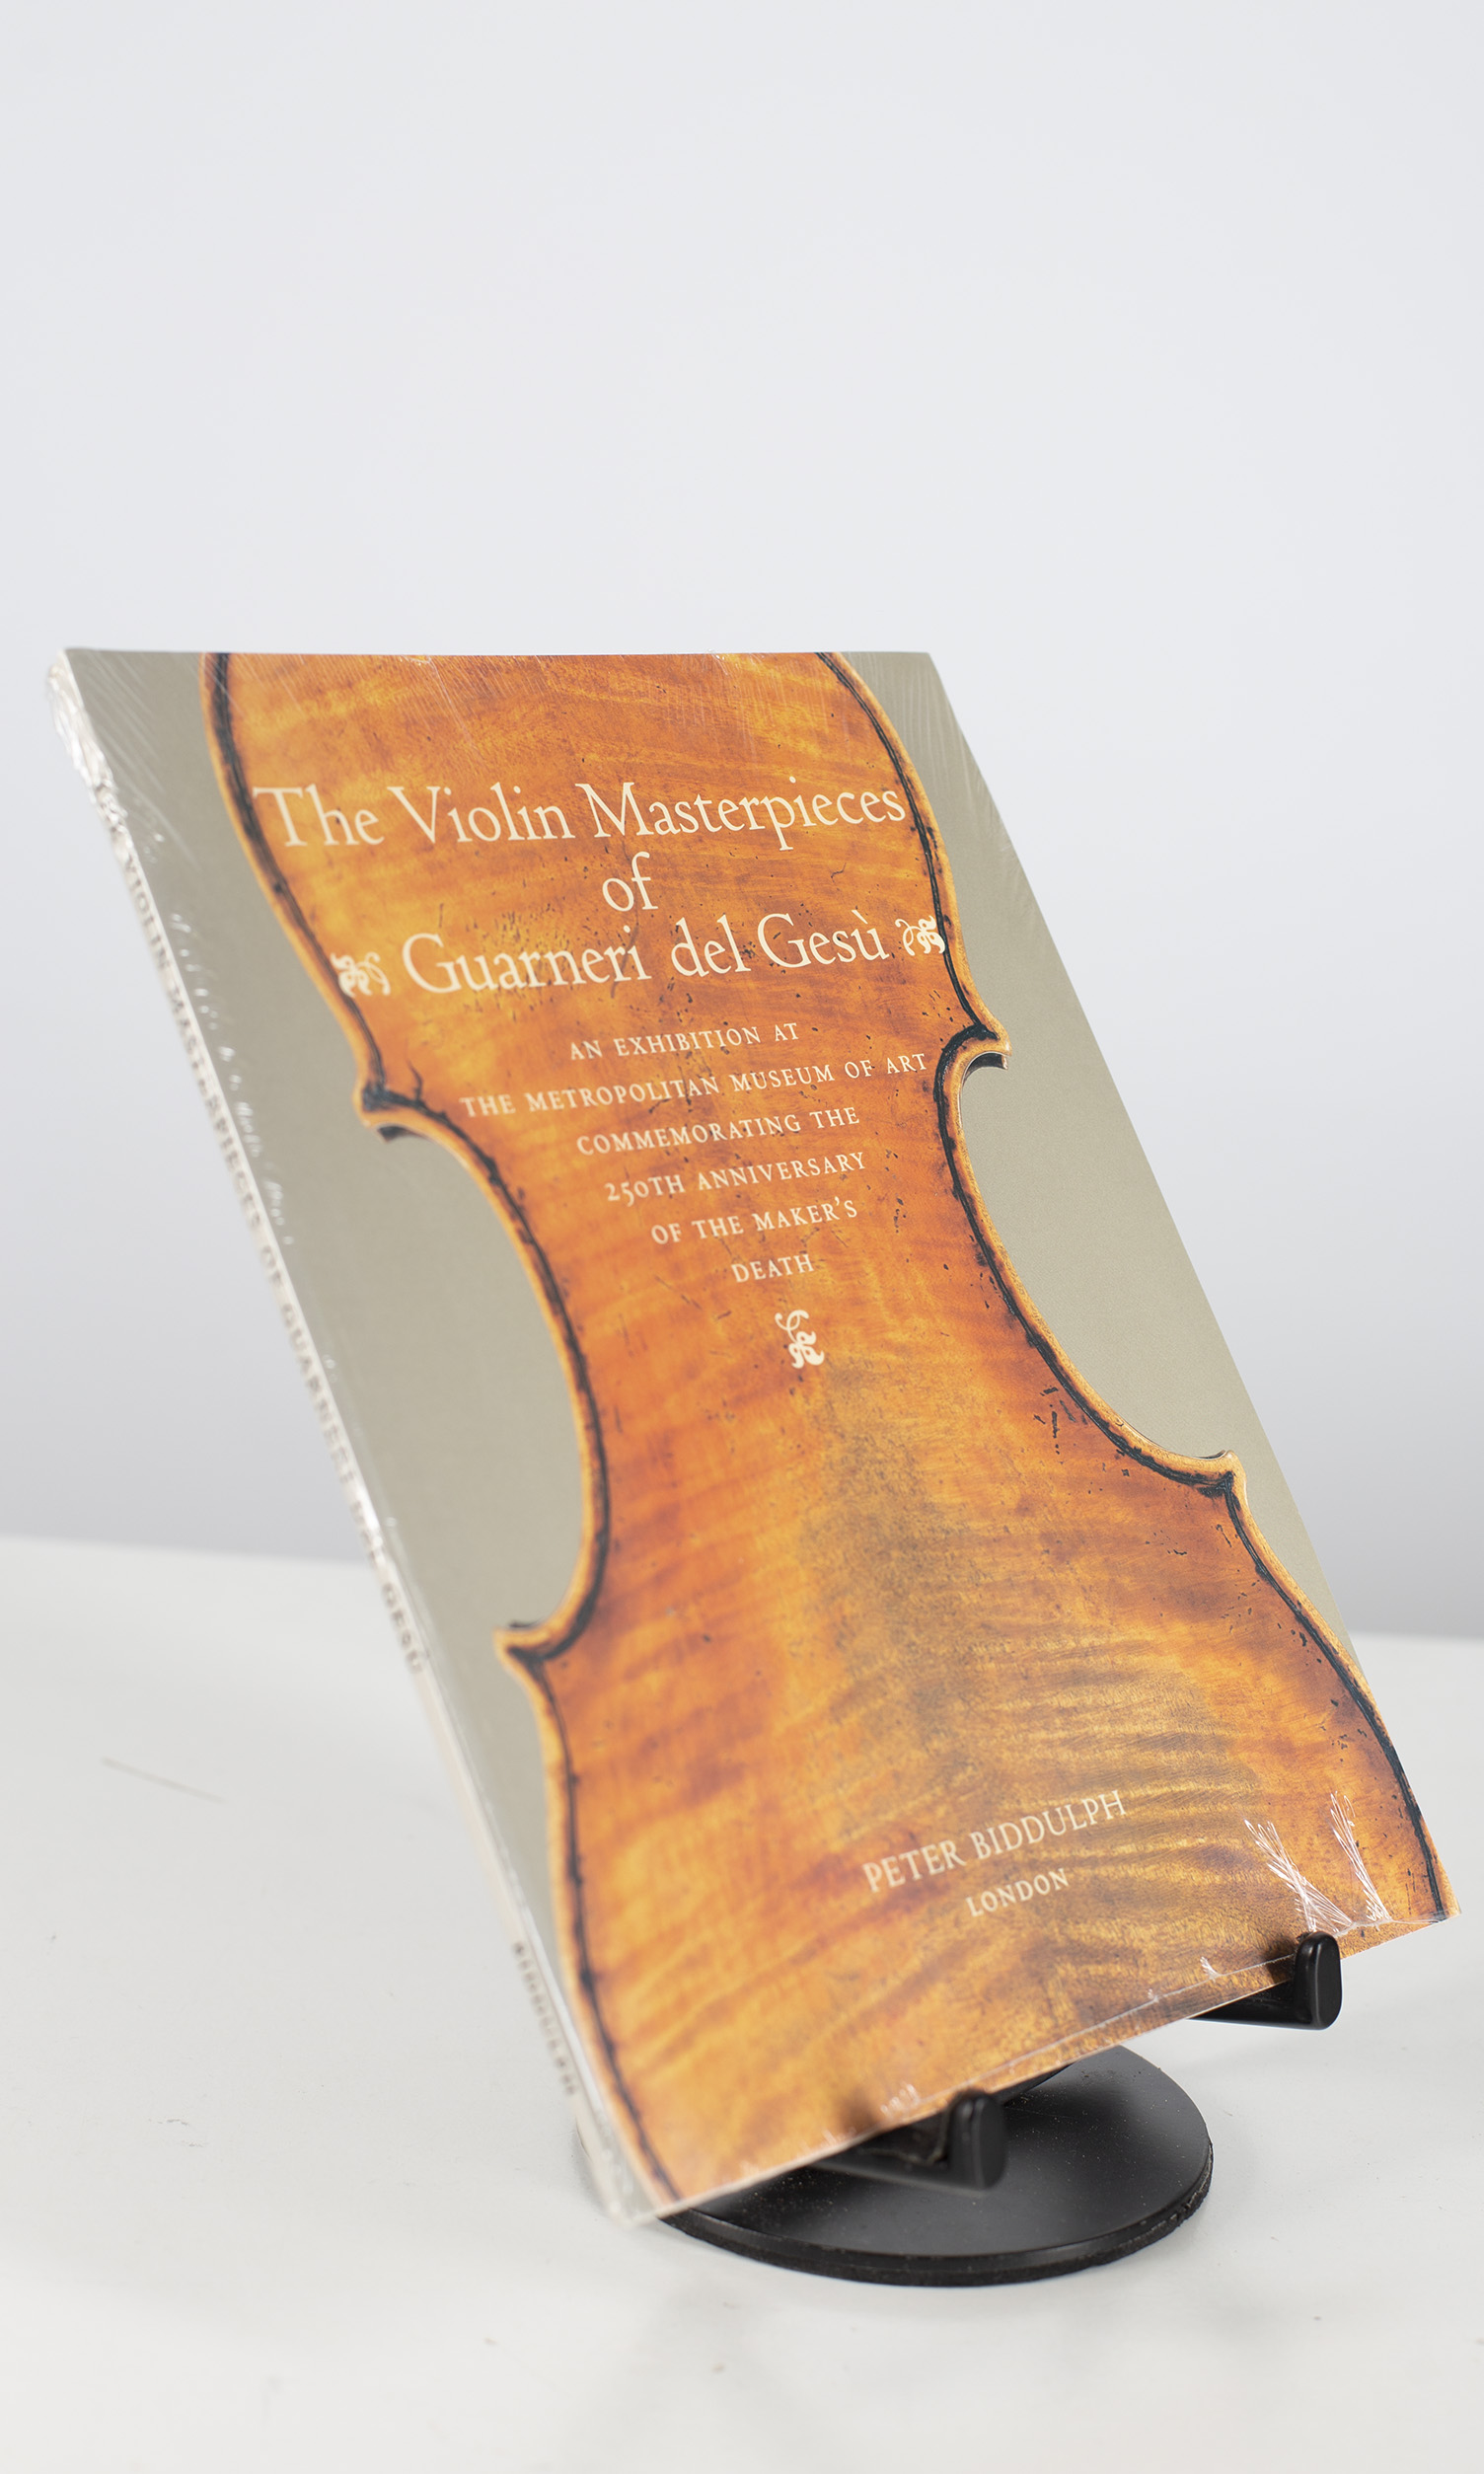 The Violin Masterpieces of Guarneri del Gesù